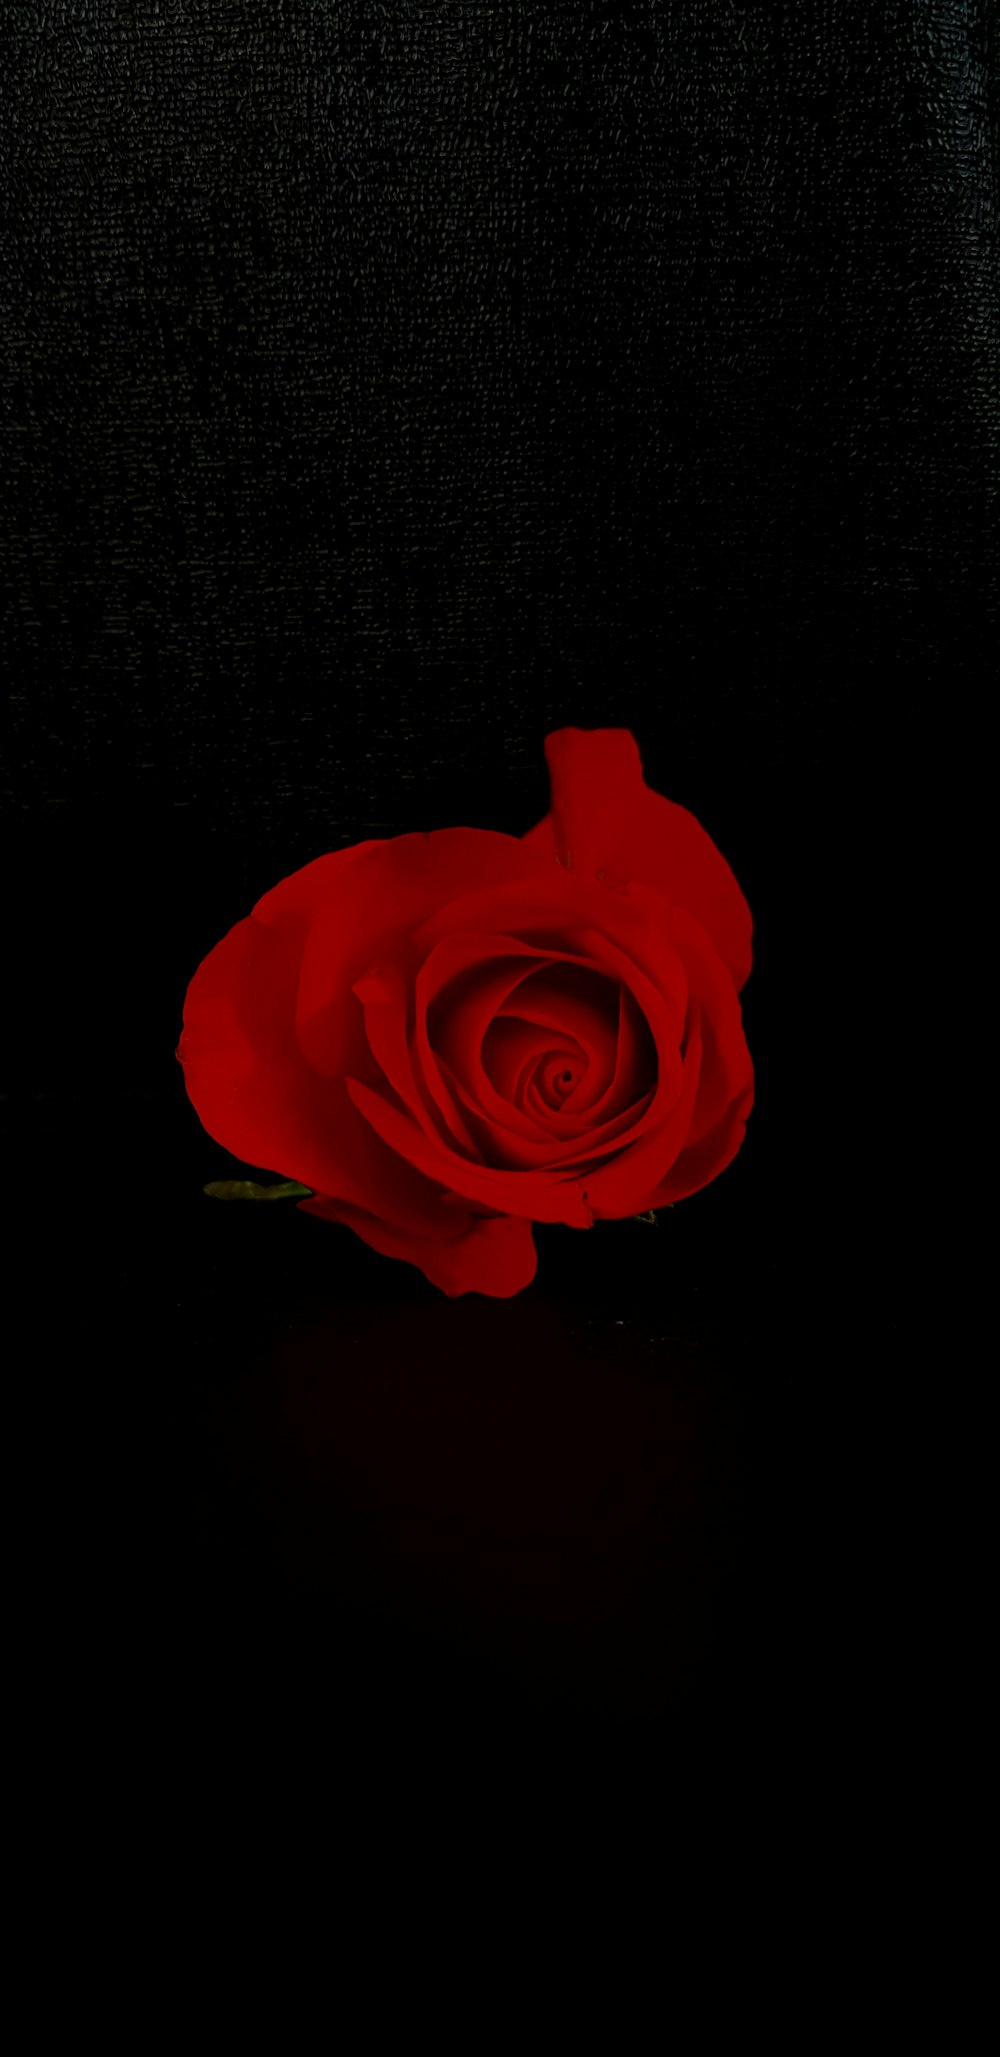 red rose flower on black background